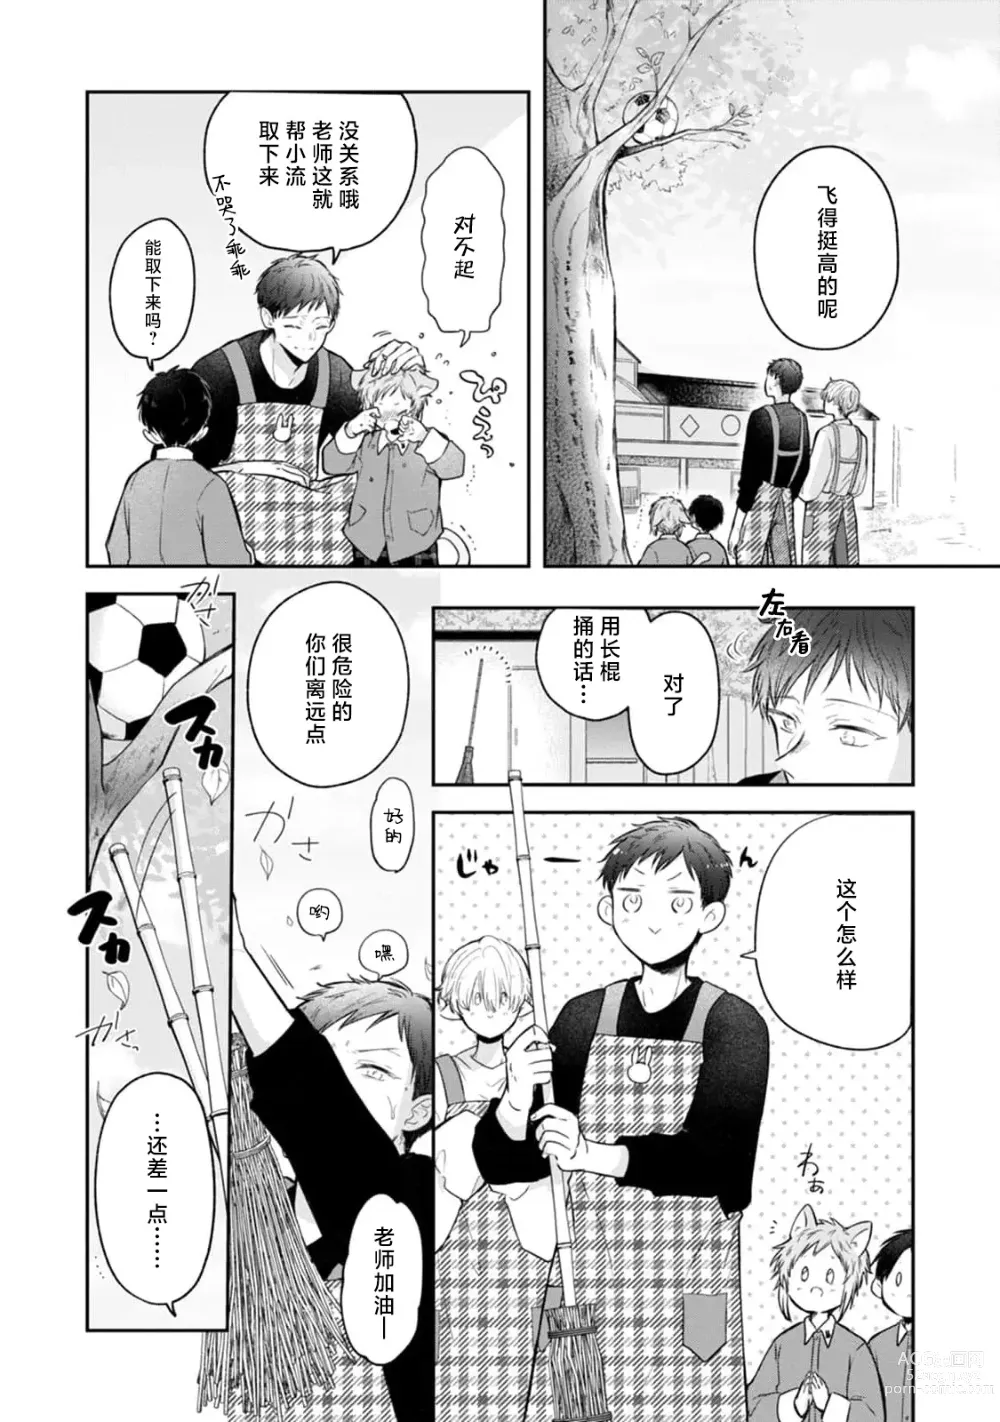 Page 16 of manga 叶羽老师全部是第一次 1-4